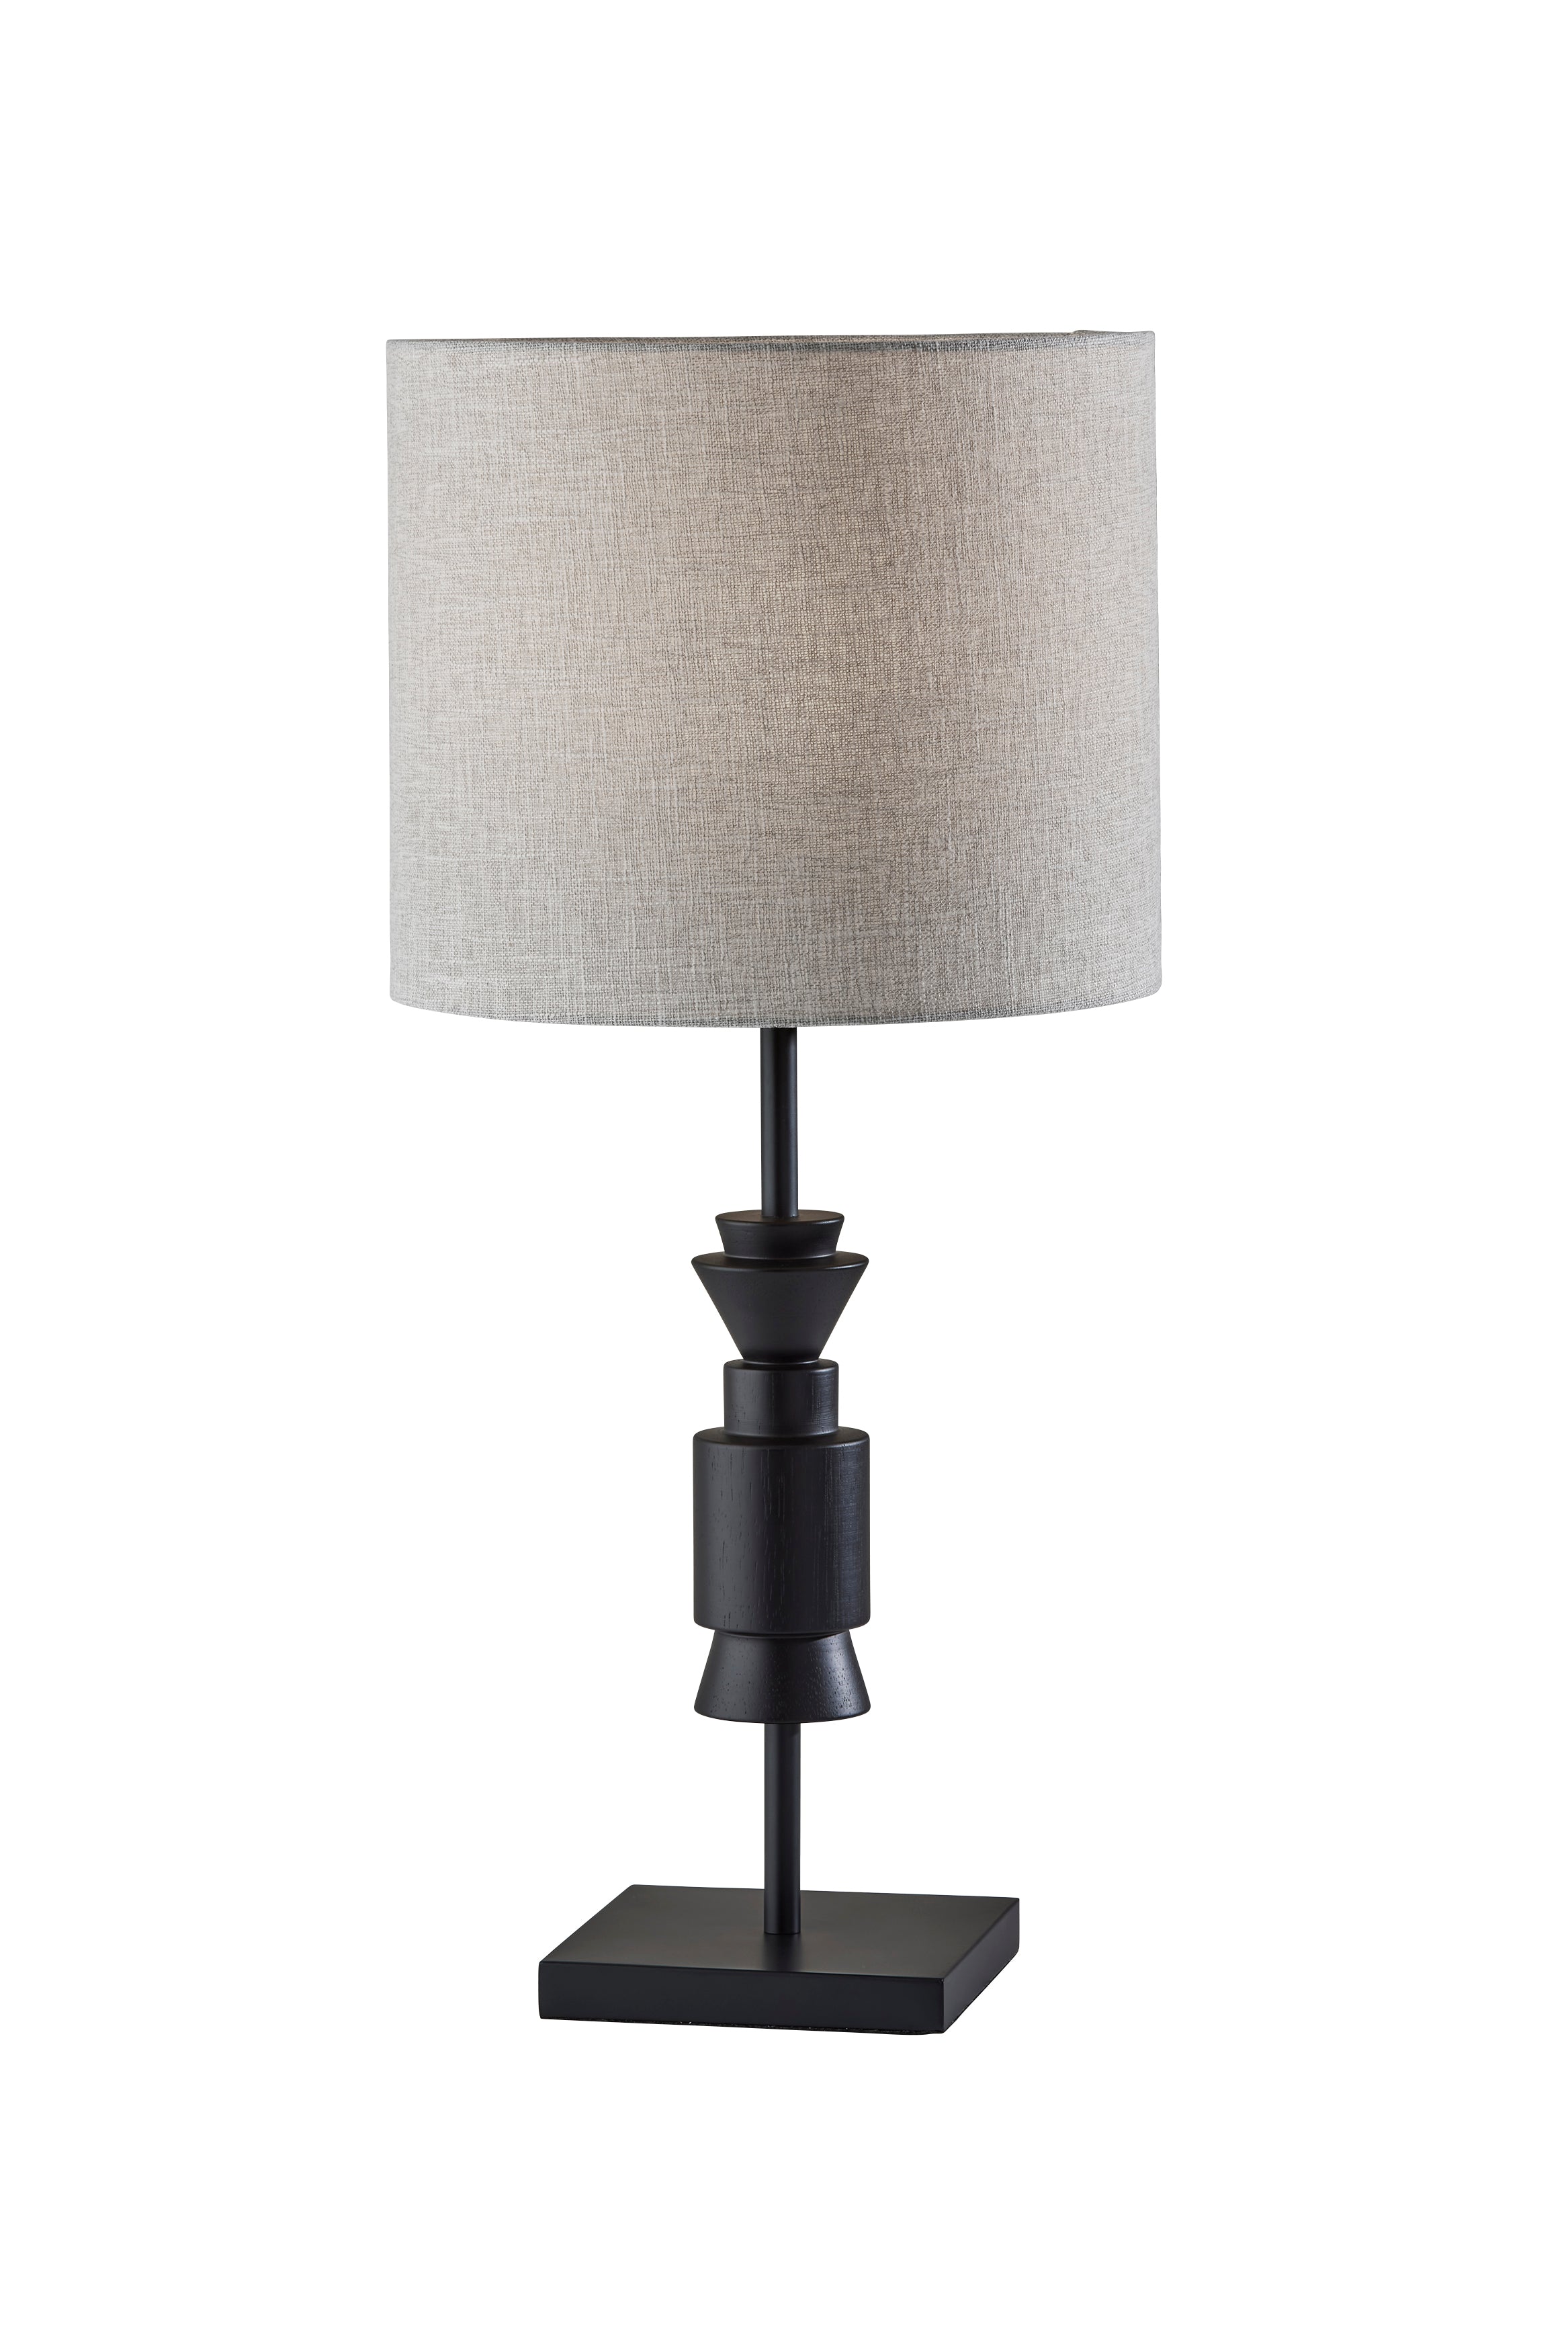 ELTON Lampe sur table Noir, Bois - 4048-01 | ADESSO